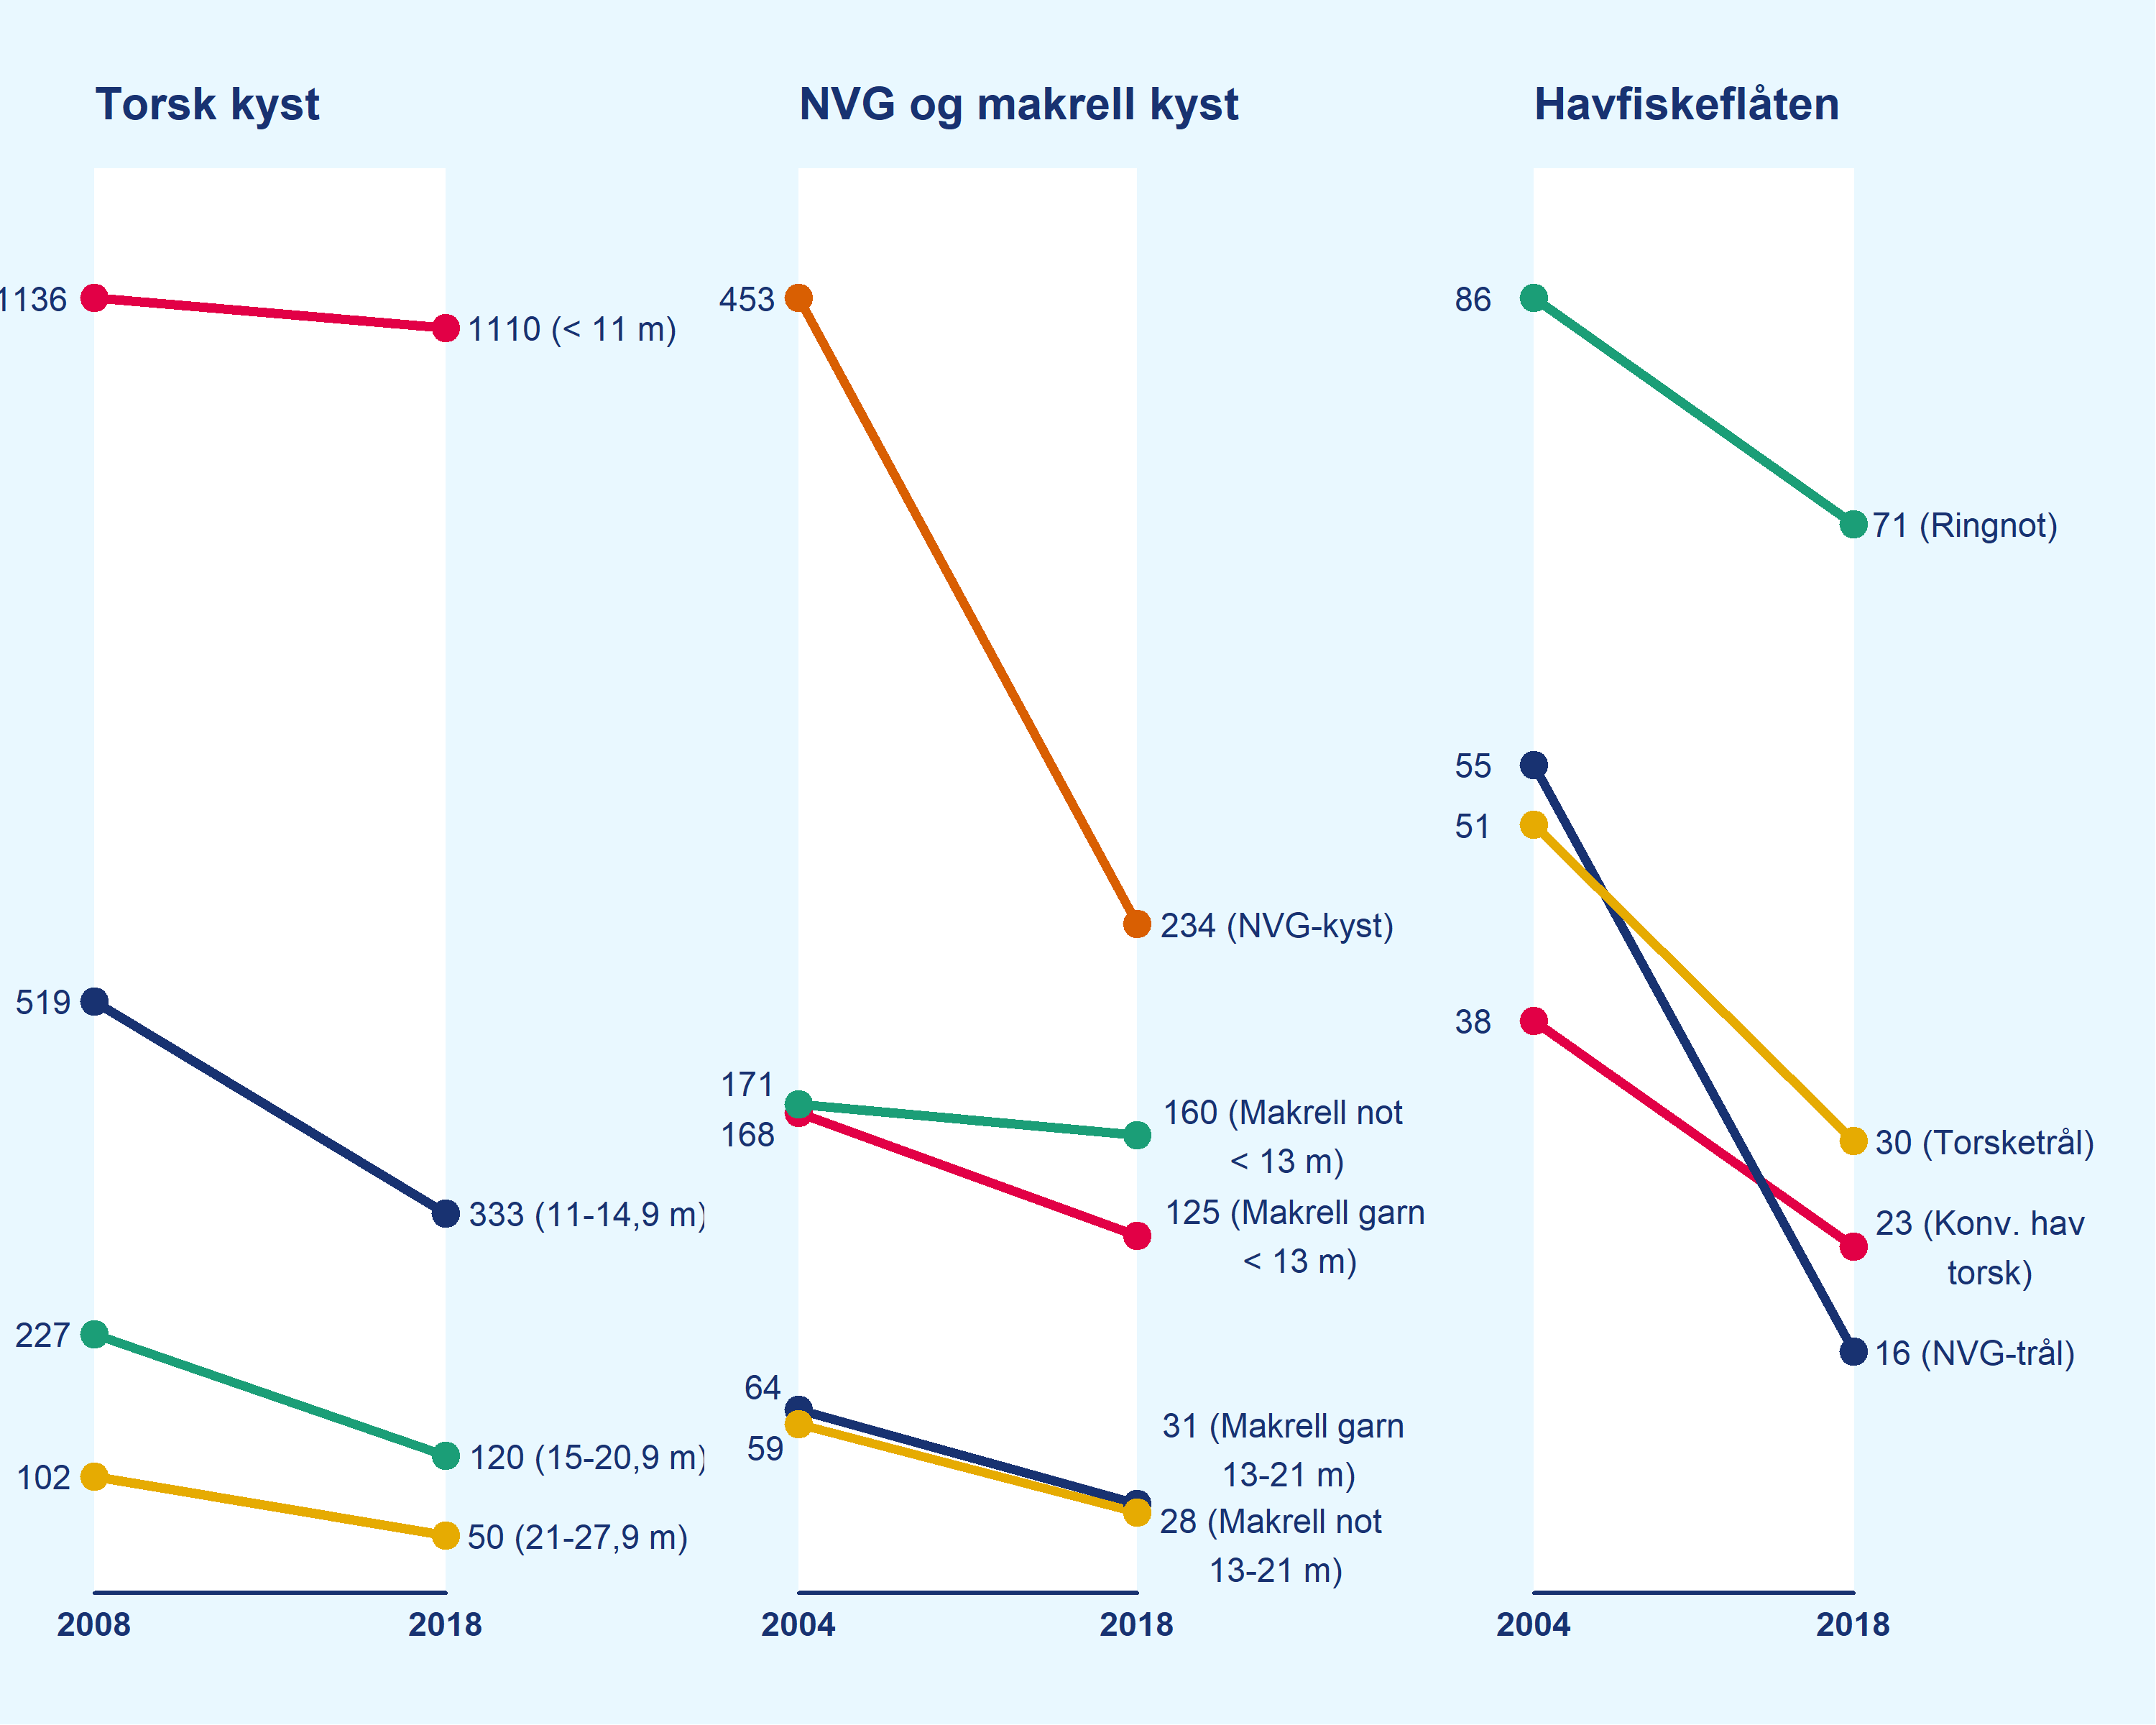 Figuren som viser utviklingen i antall fartøy fra 2004/2008 til 2018, viser at det har blitt færre fartøy innenfor samtlige reguleringsgrupper i perioden 2004/2008 til 2018. 